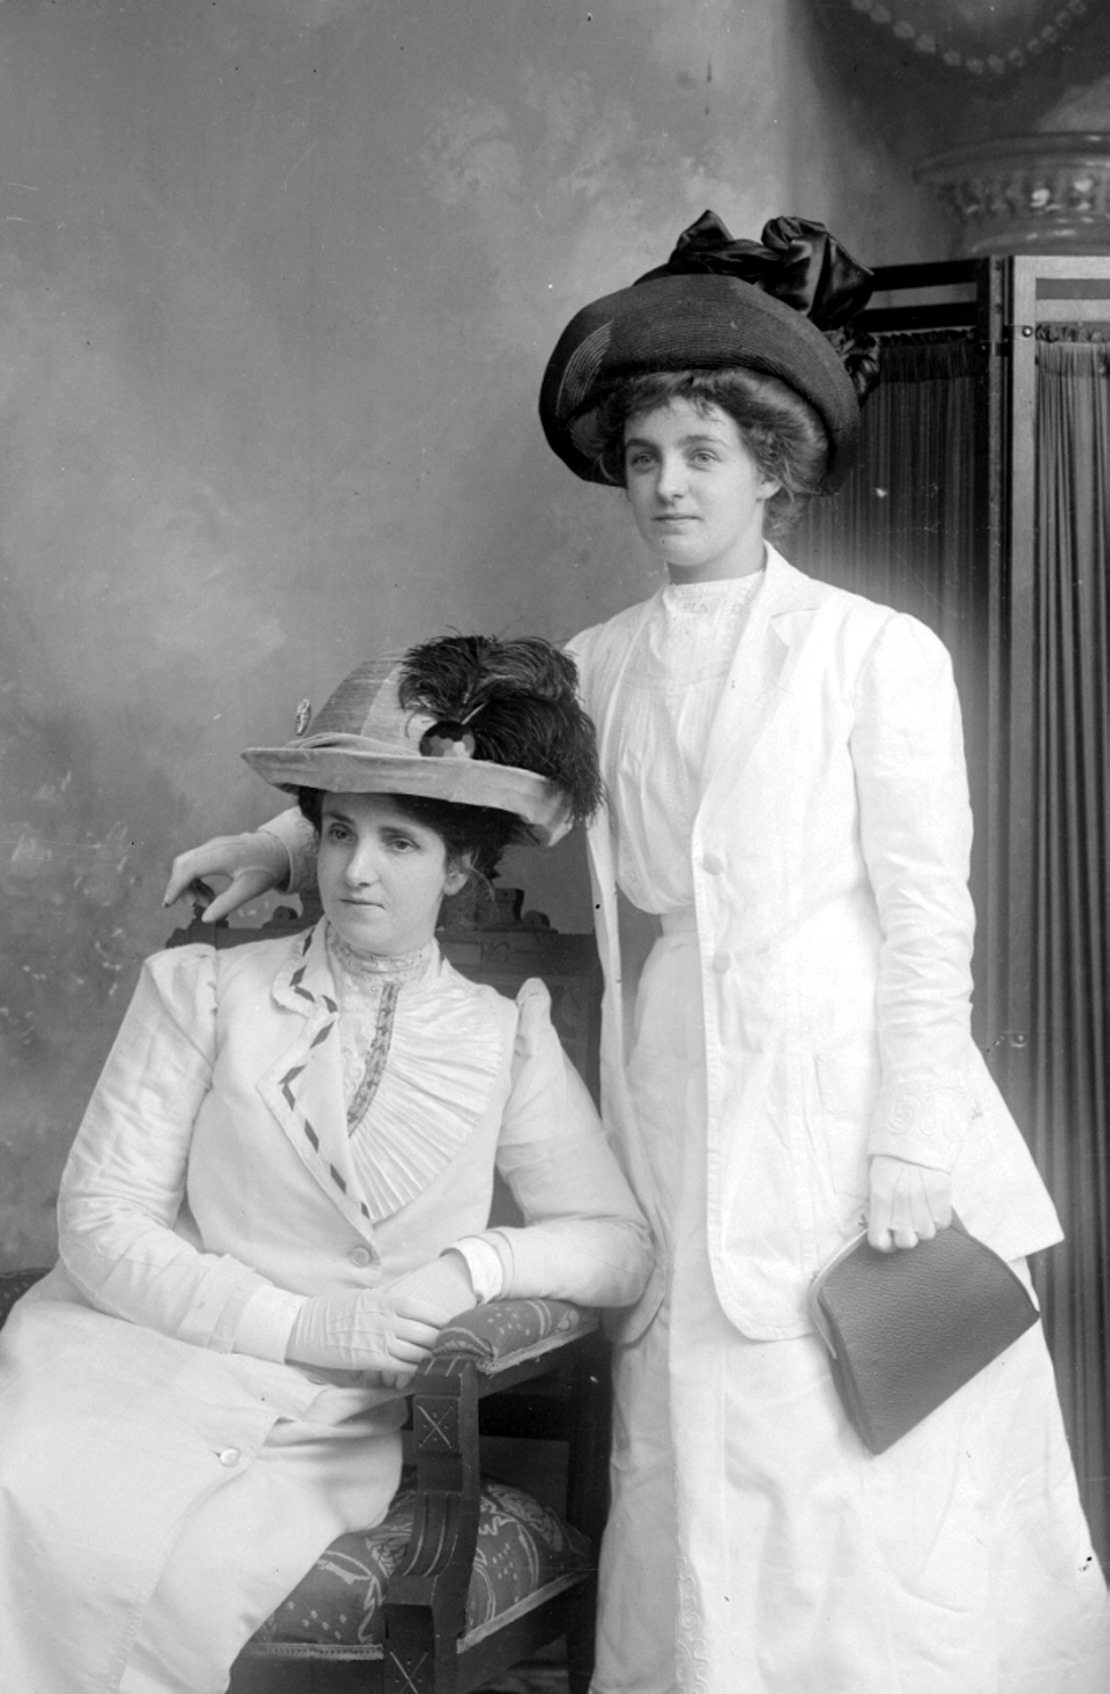 Photographie en noir et blanc de deux élégantes femmes dont les vêtements, les gants y compris, sont blancs ou très pâles.